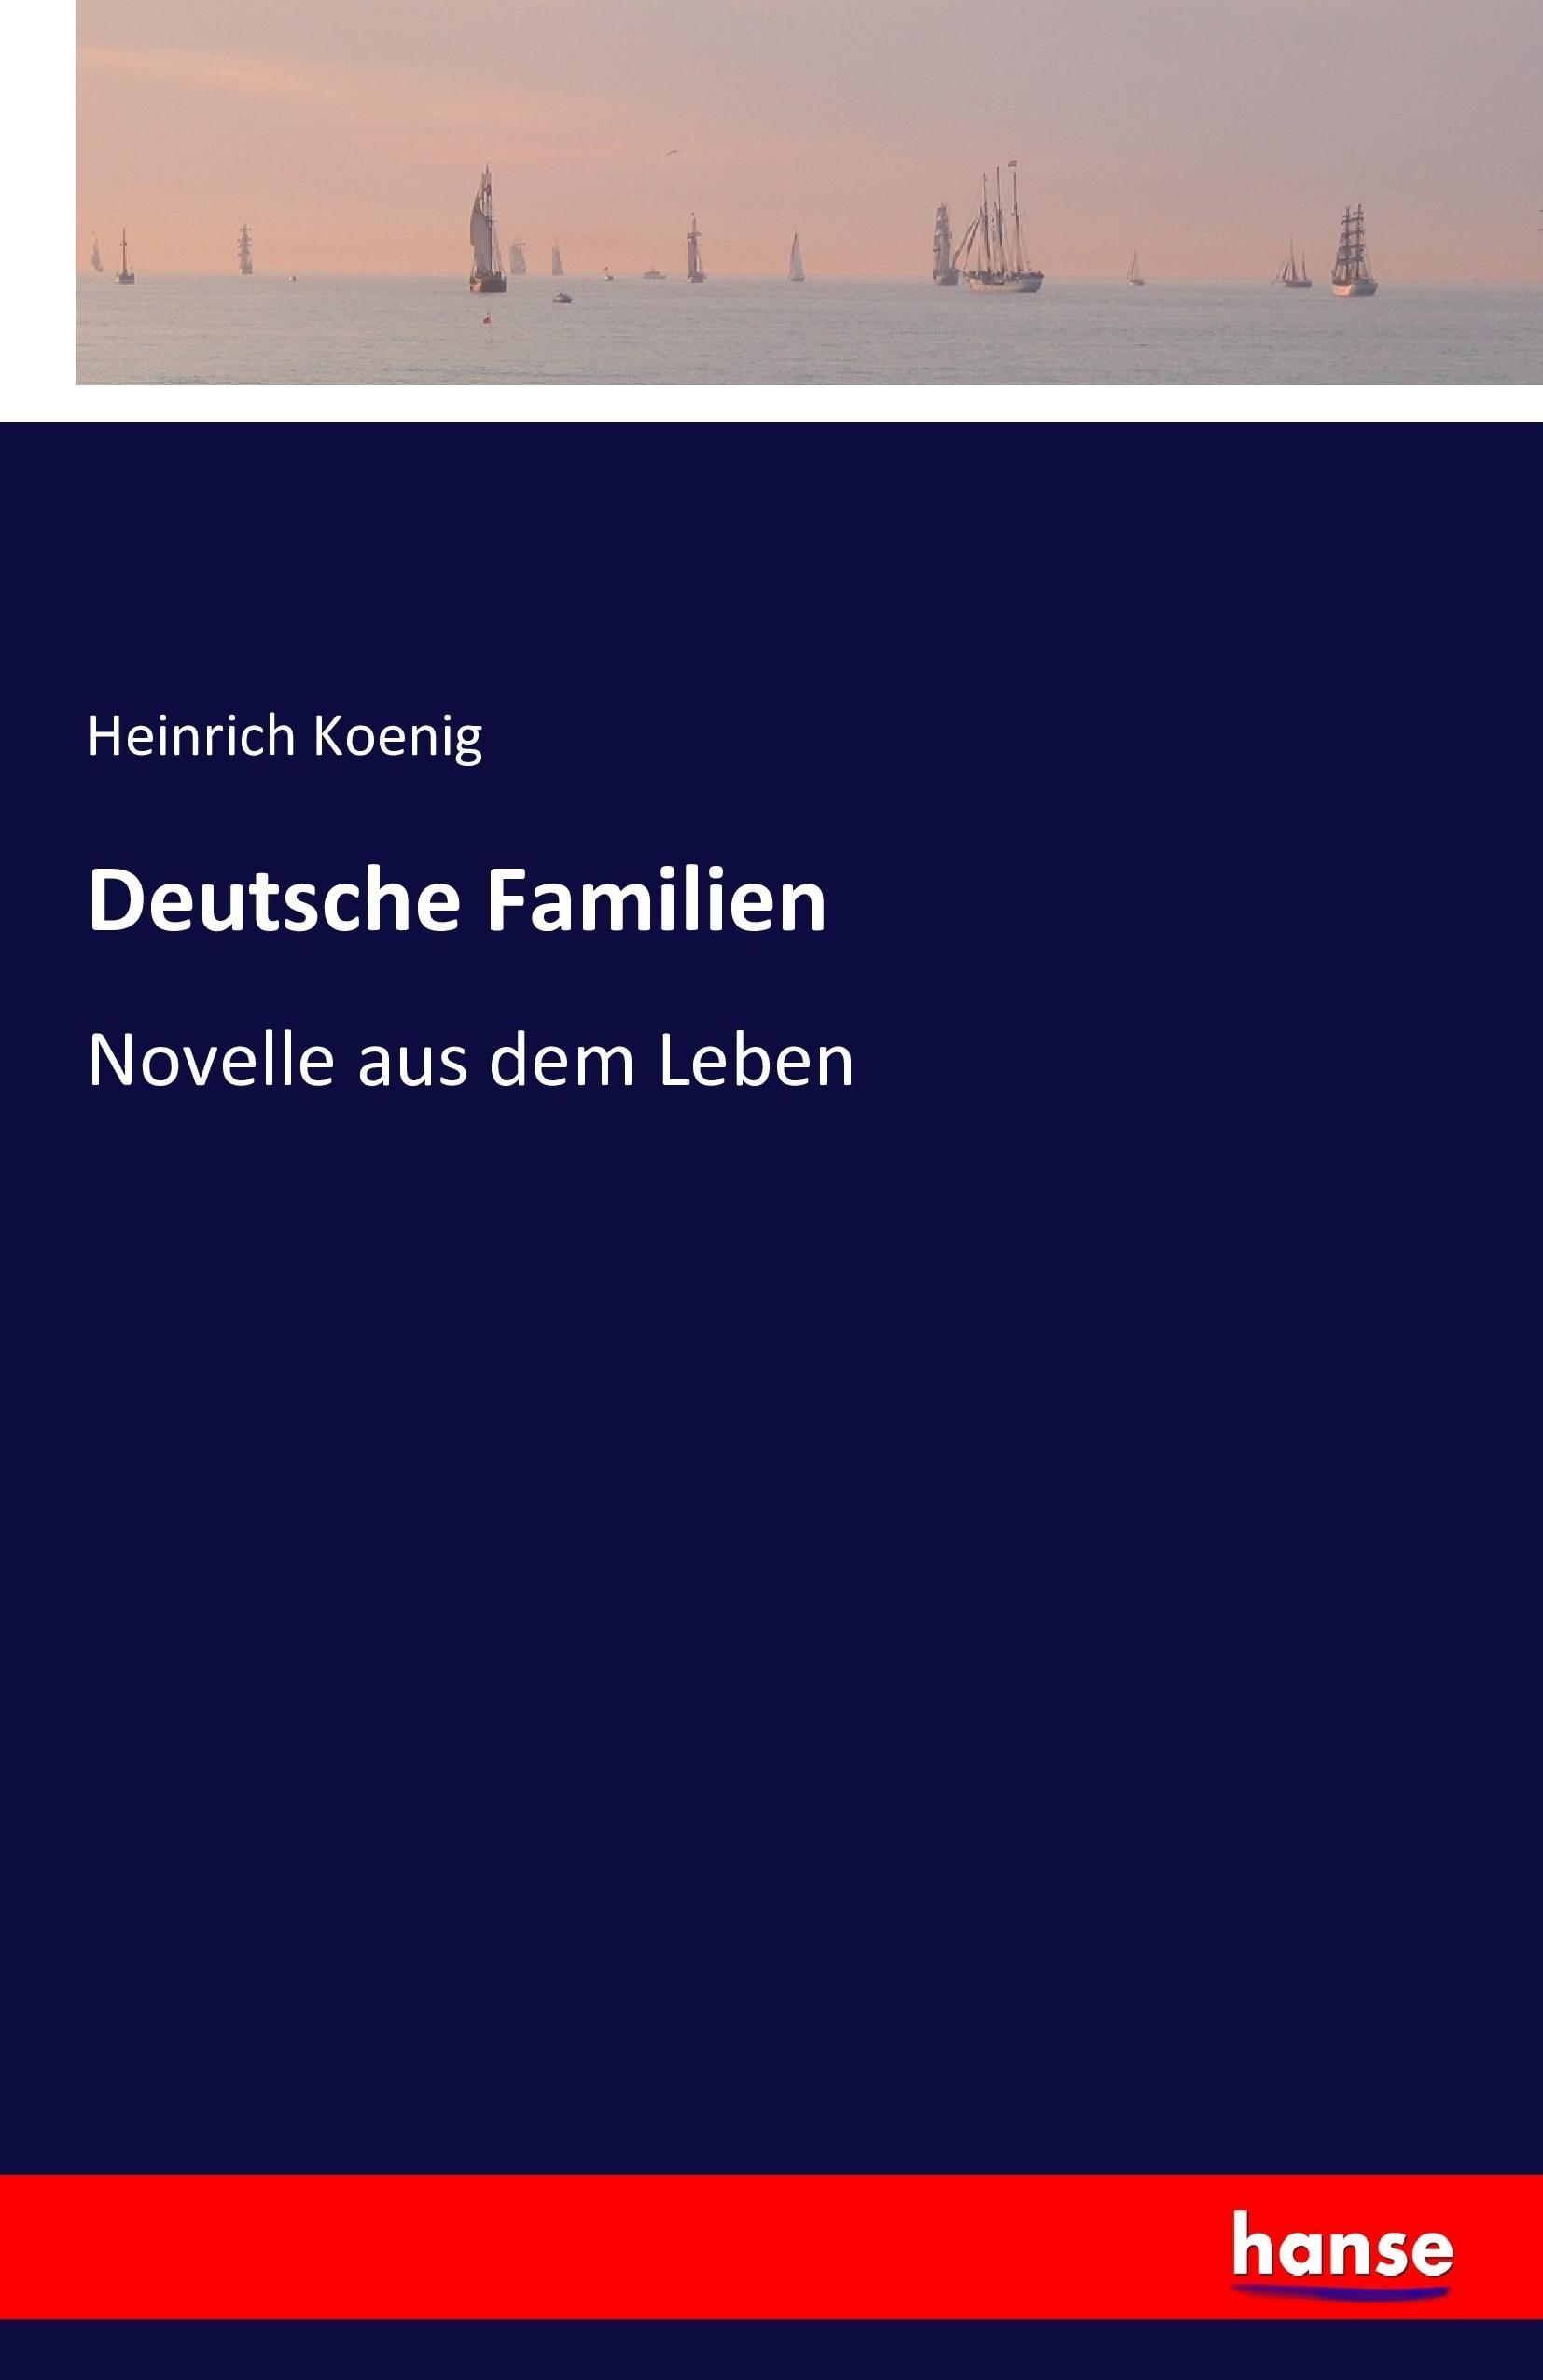 Deutsche Familien | Novelle aus dem Leben | Heinrich Koenig | Taschenbuch | Paperback | 356 S. | Deutsch | 2016 | hansebooks | EAN 9783741147524 - Koenig, Heinrich